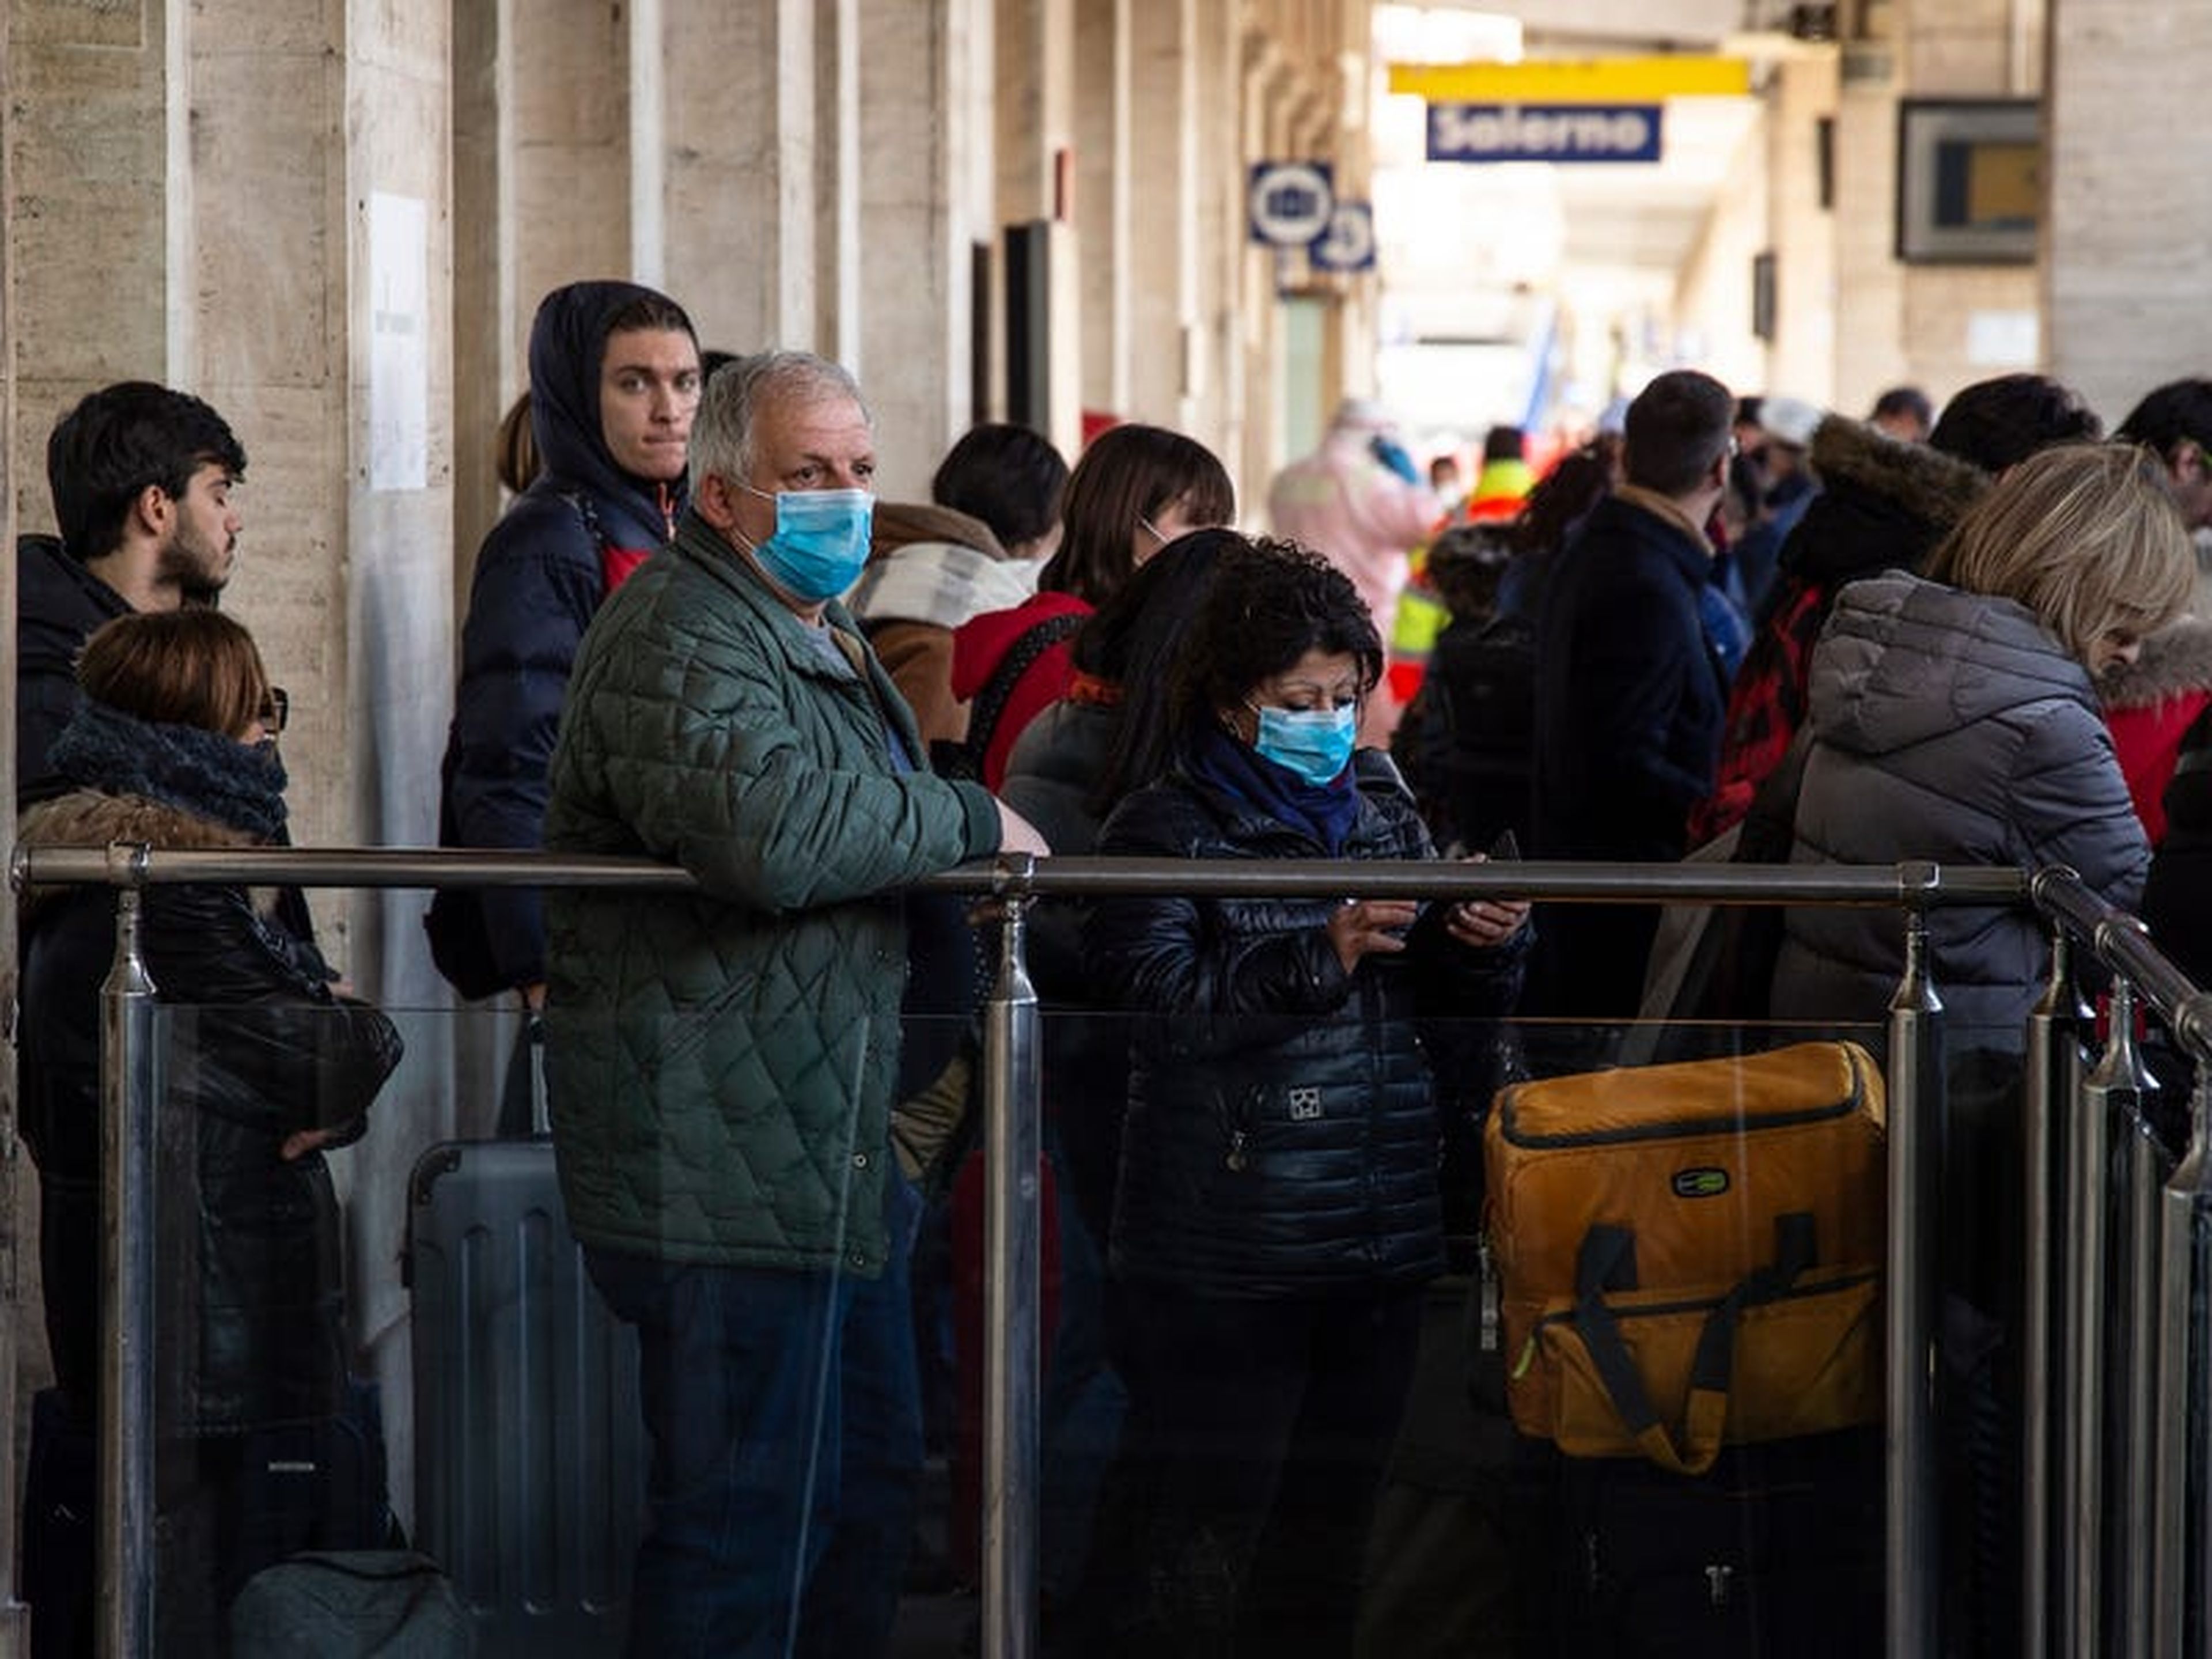 Los pasajeros del tren pasan por un registro sanitario en Salerno, sur de Italia, el 8 de marzo de 2020.